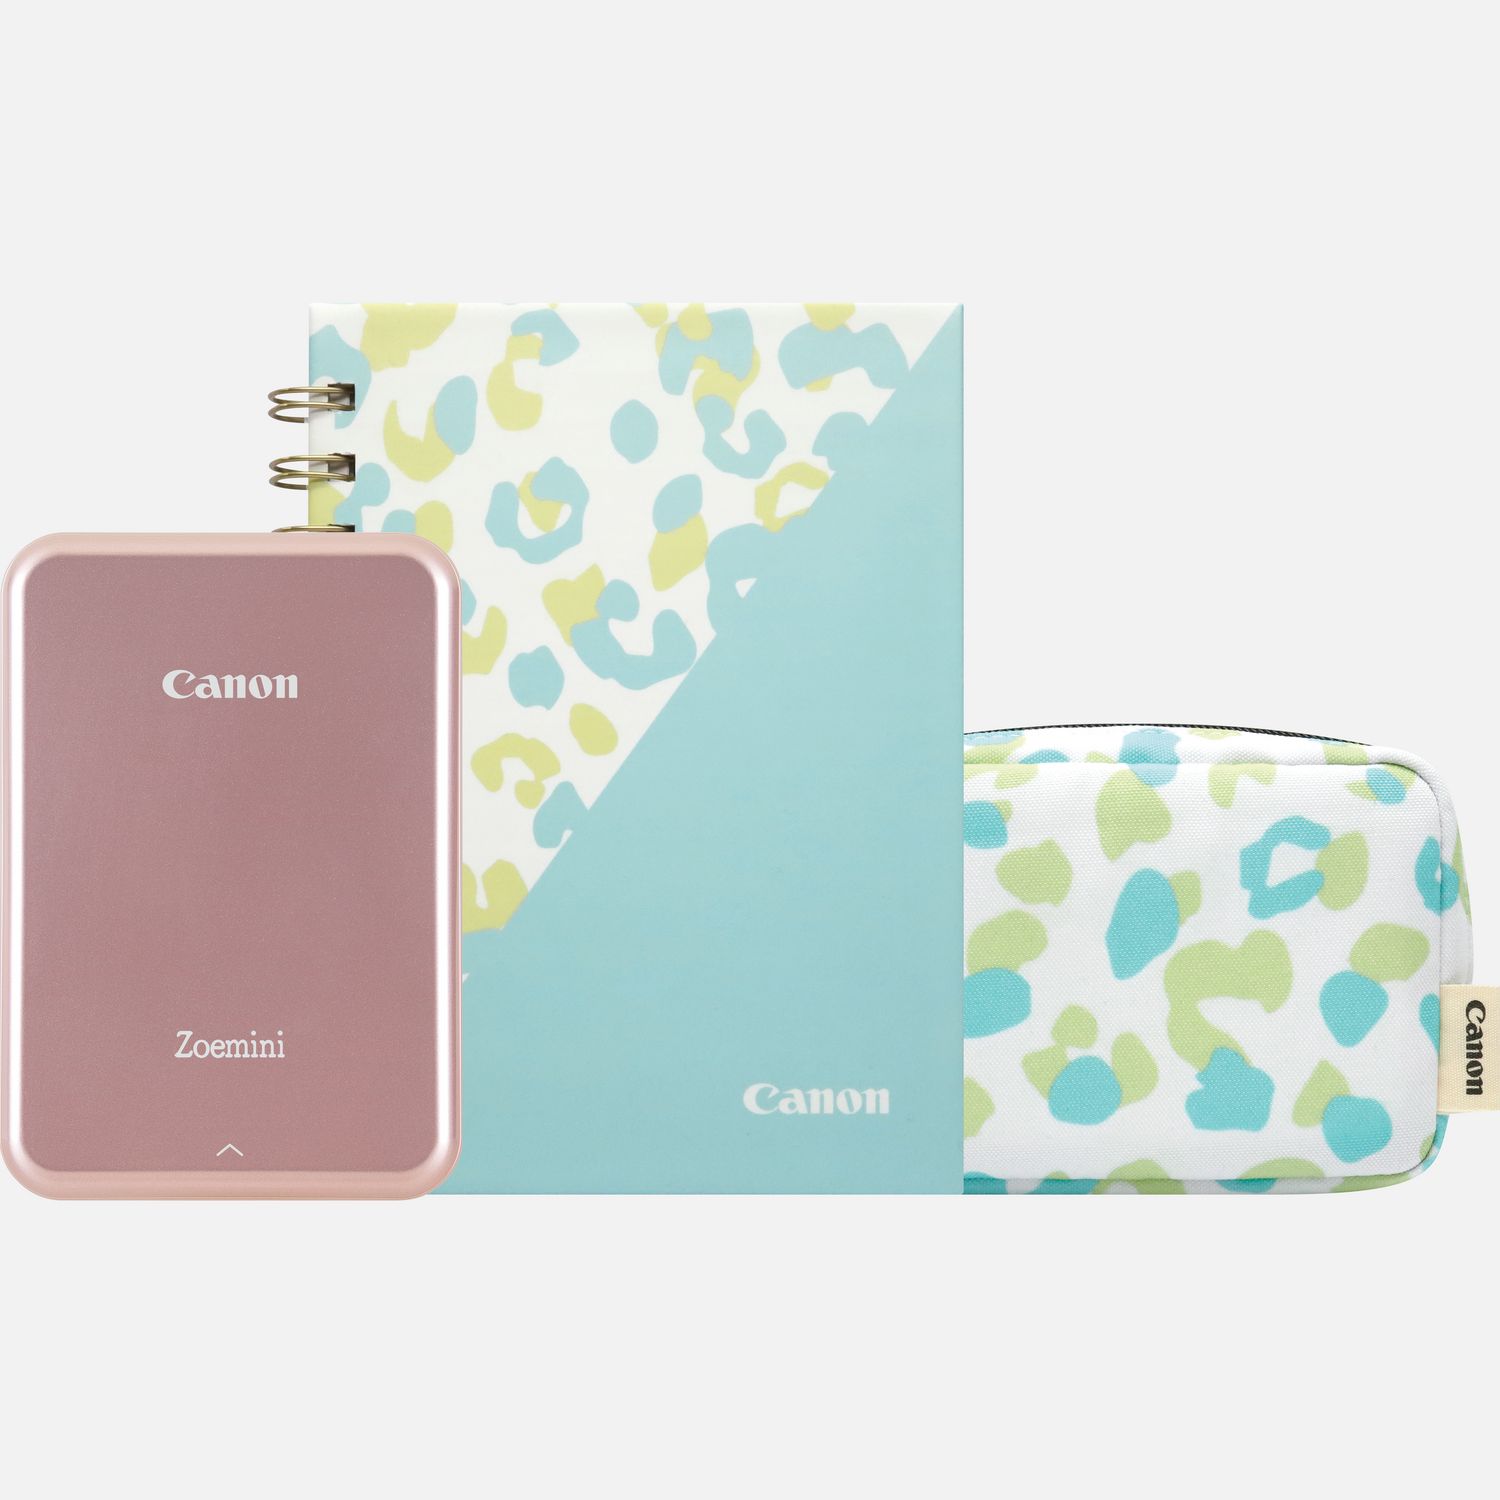 Imprimante photo couleur portable Canon Zoemini, rose doré + agenda + étui